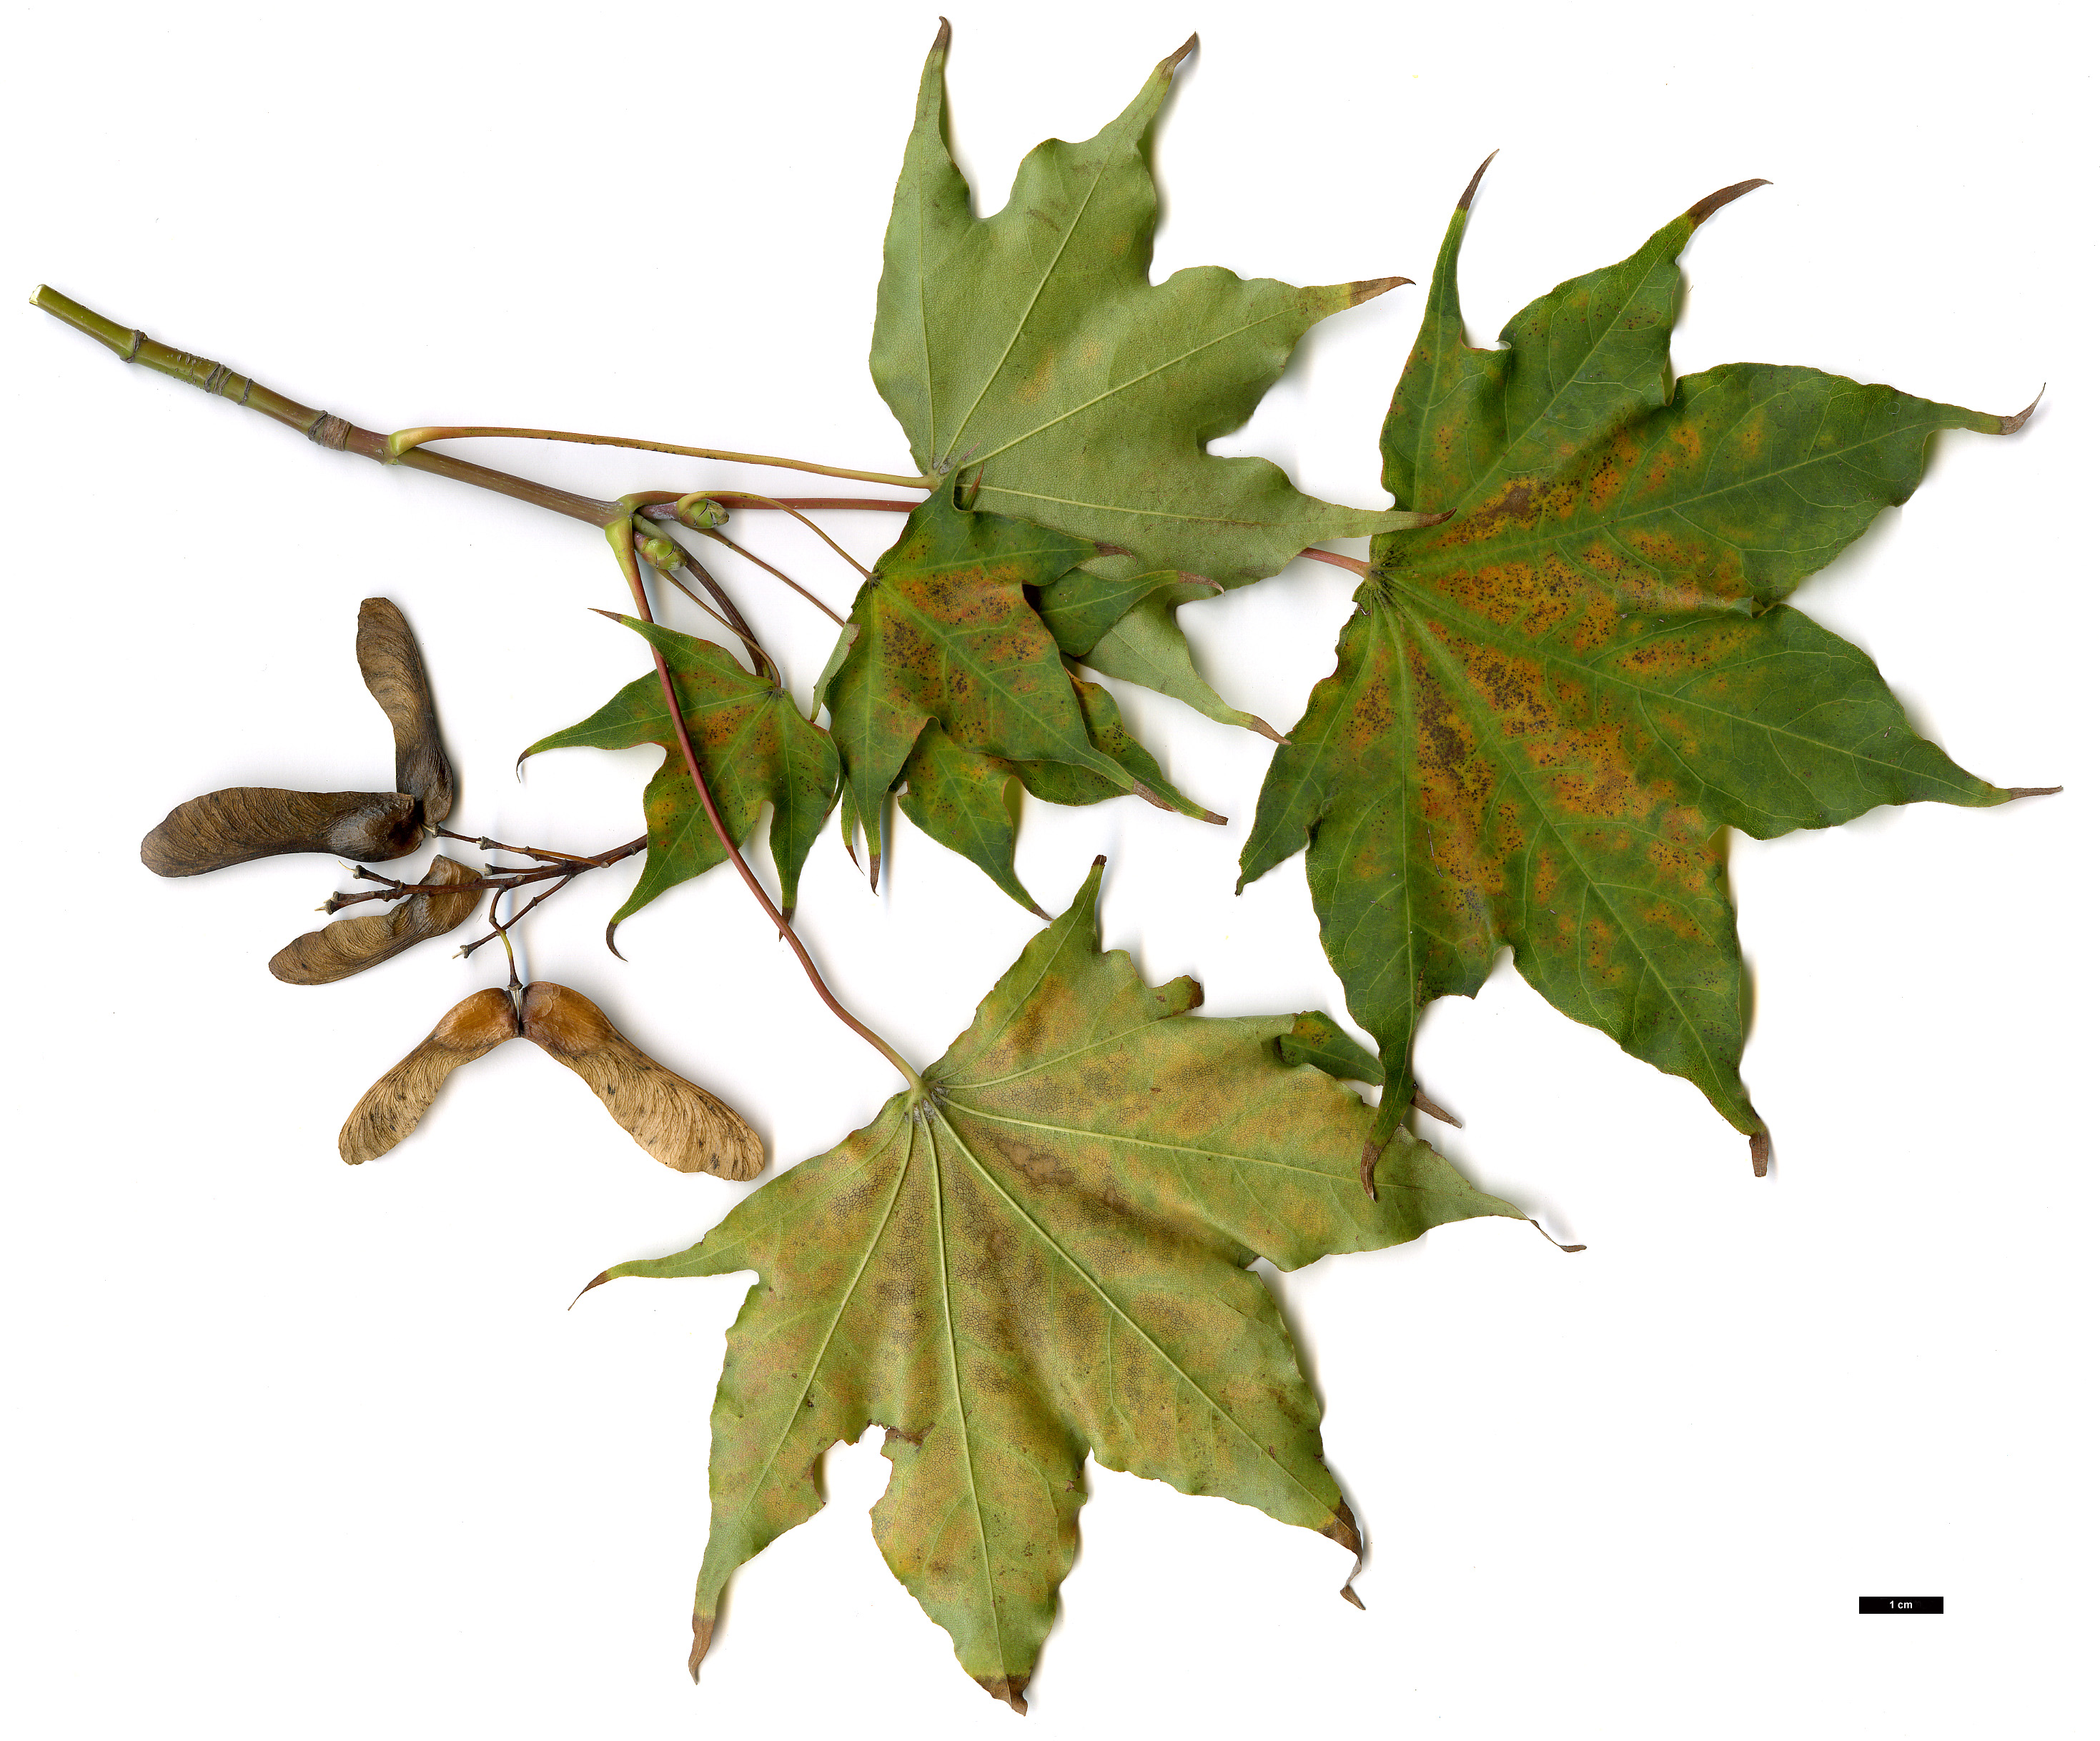 High resolution image: Family: Sapindaceae - Genus: Acer - Taxon: cappadocicum - SpeciesSub: subsp. cappadocicum